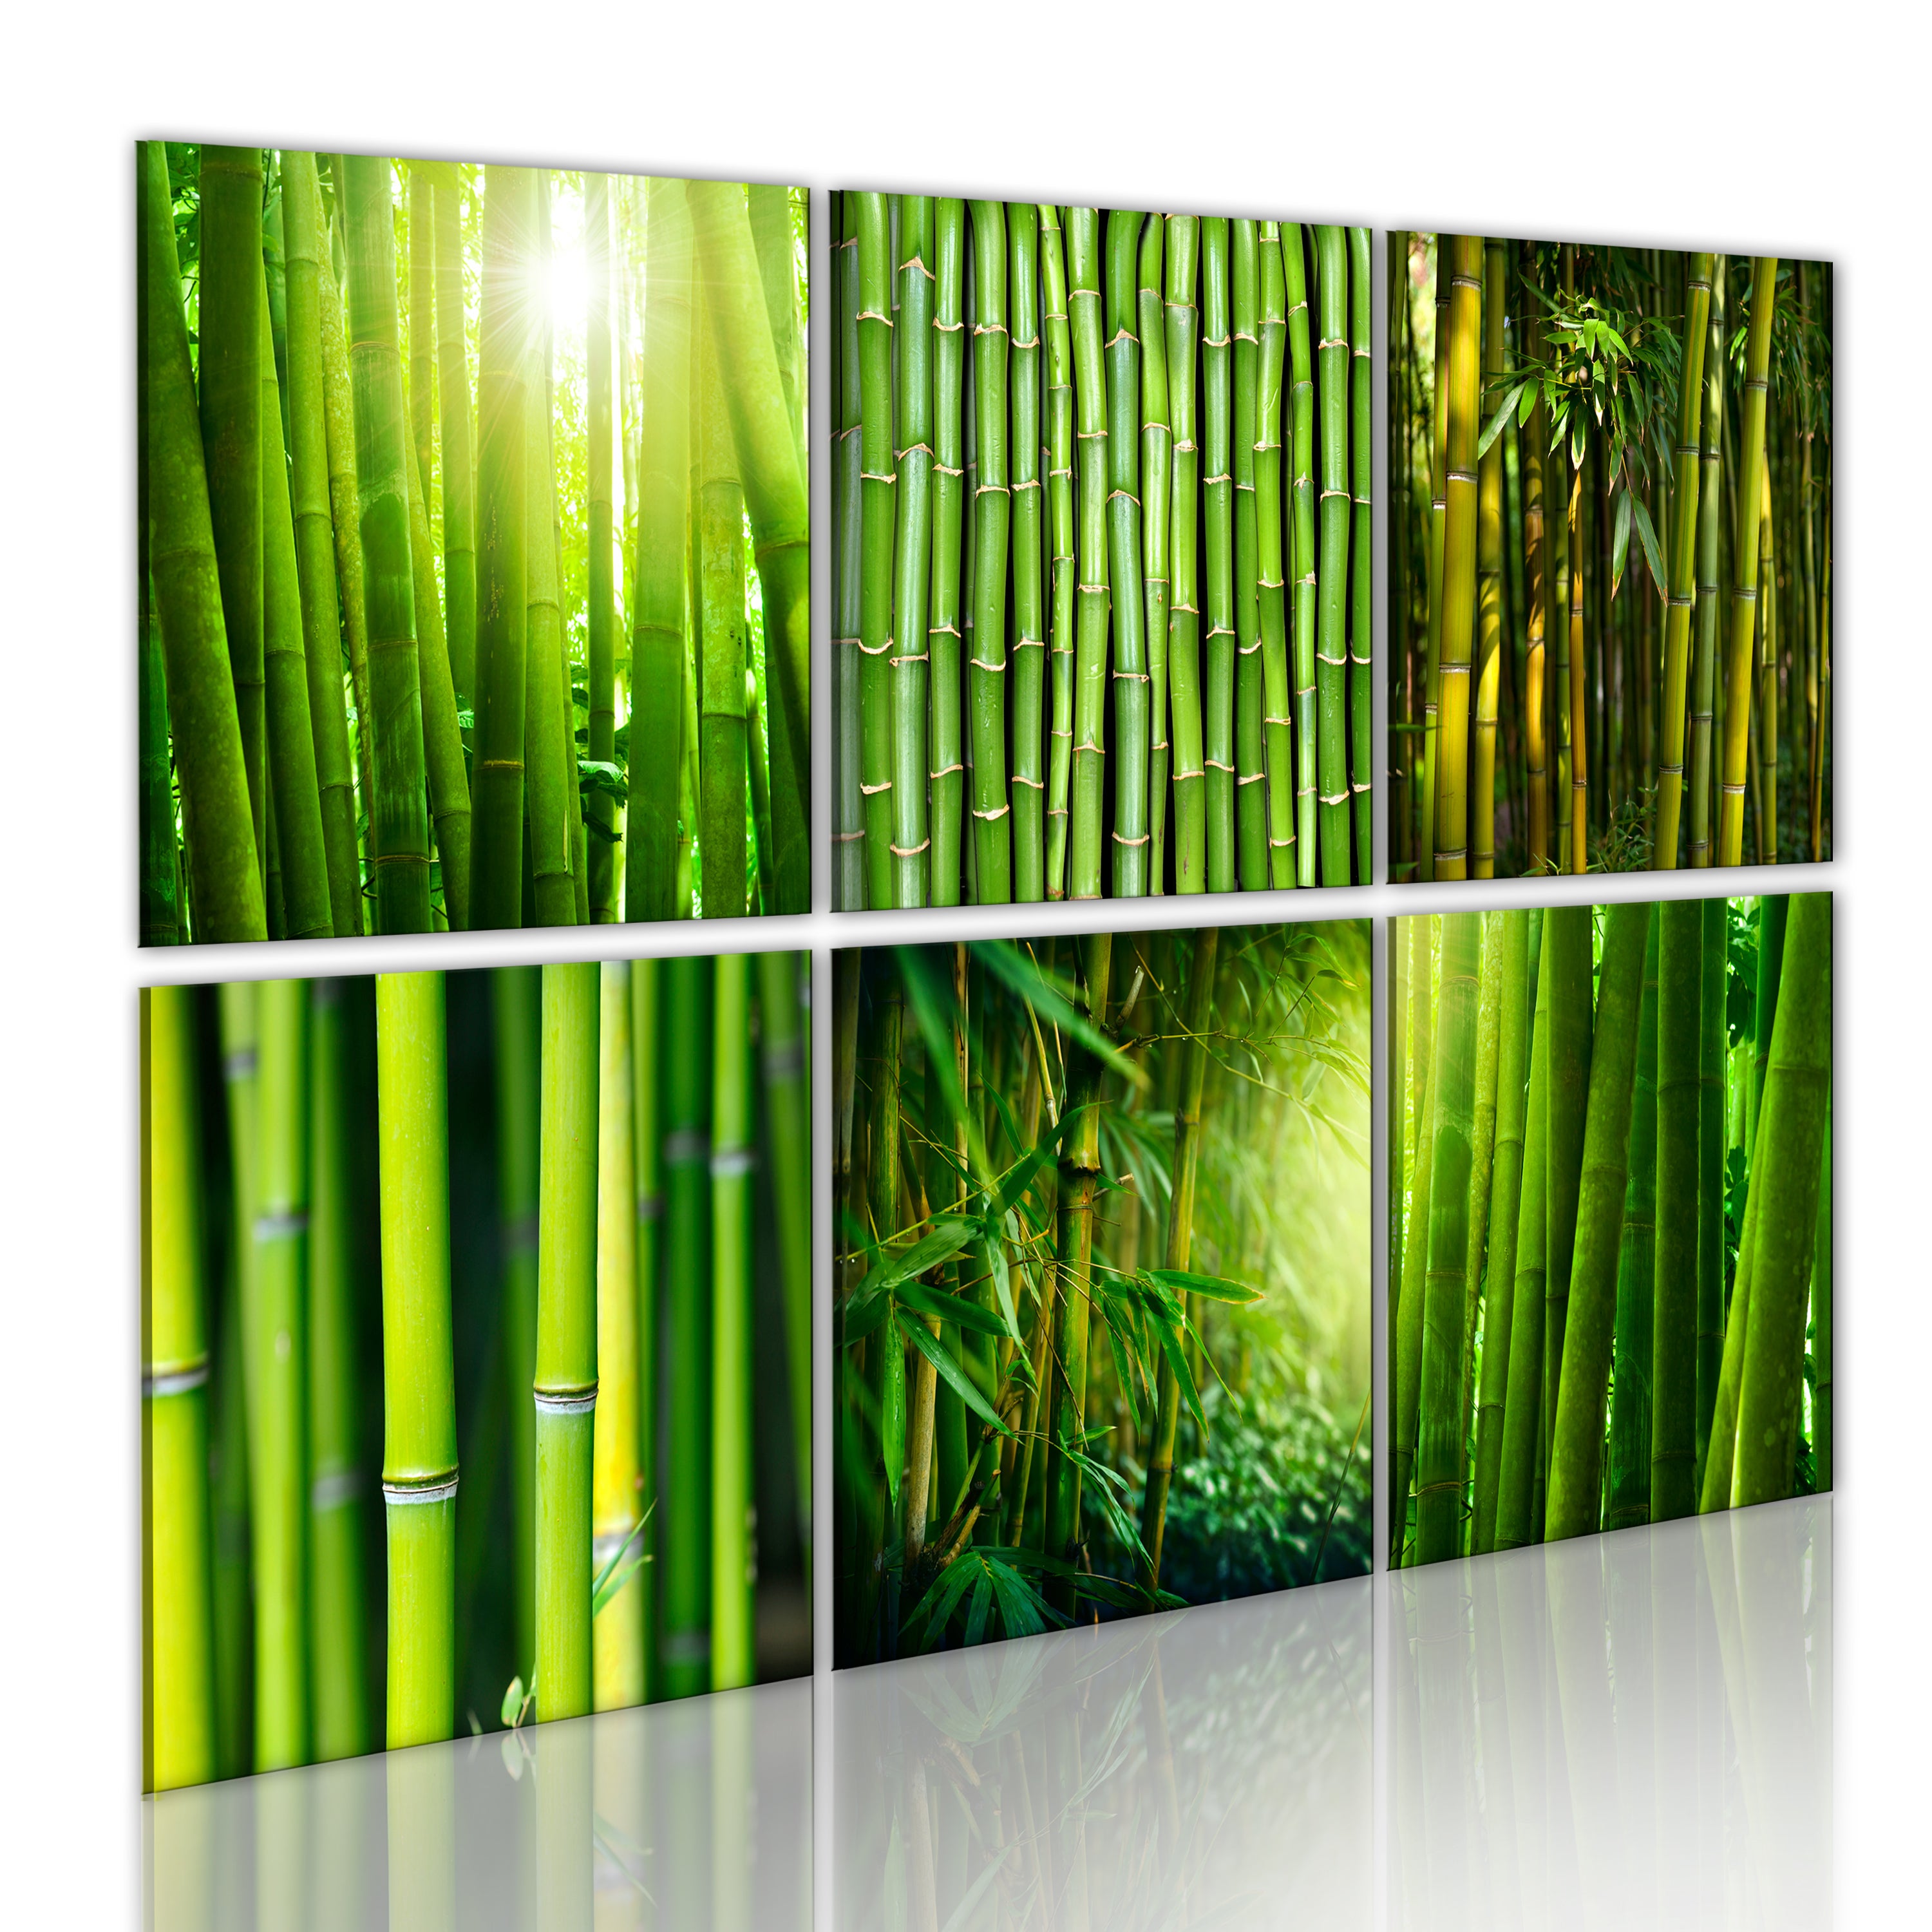 Cadre mural en bambou 120x80 cm